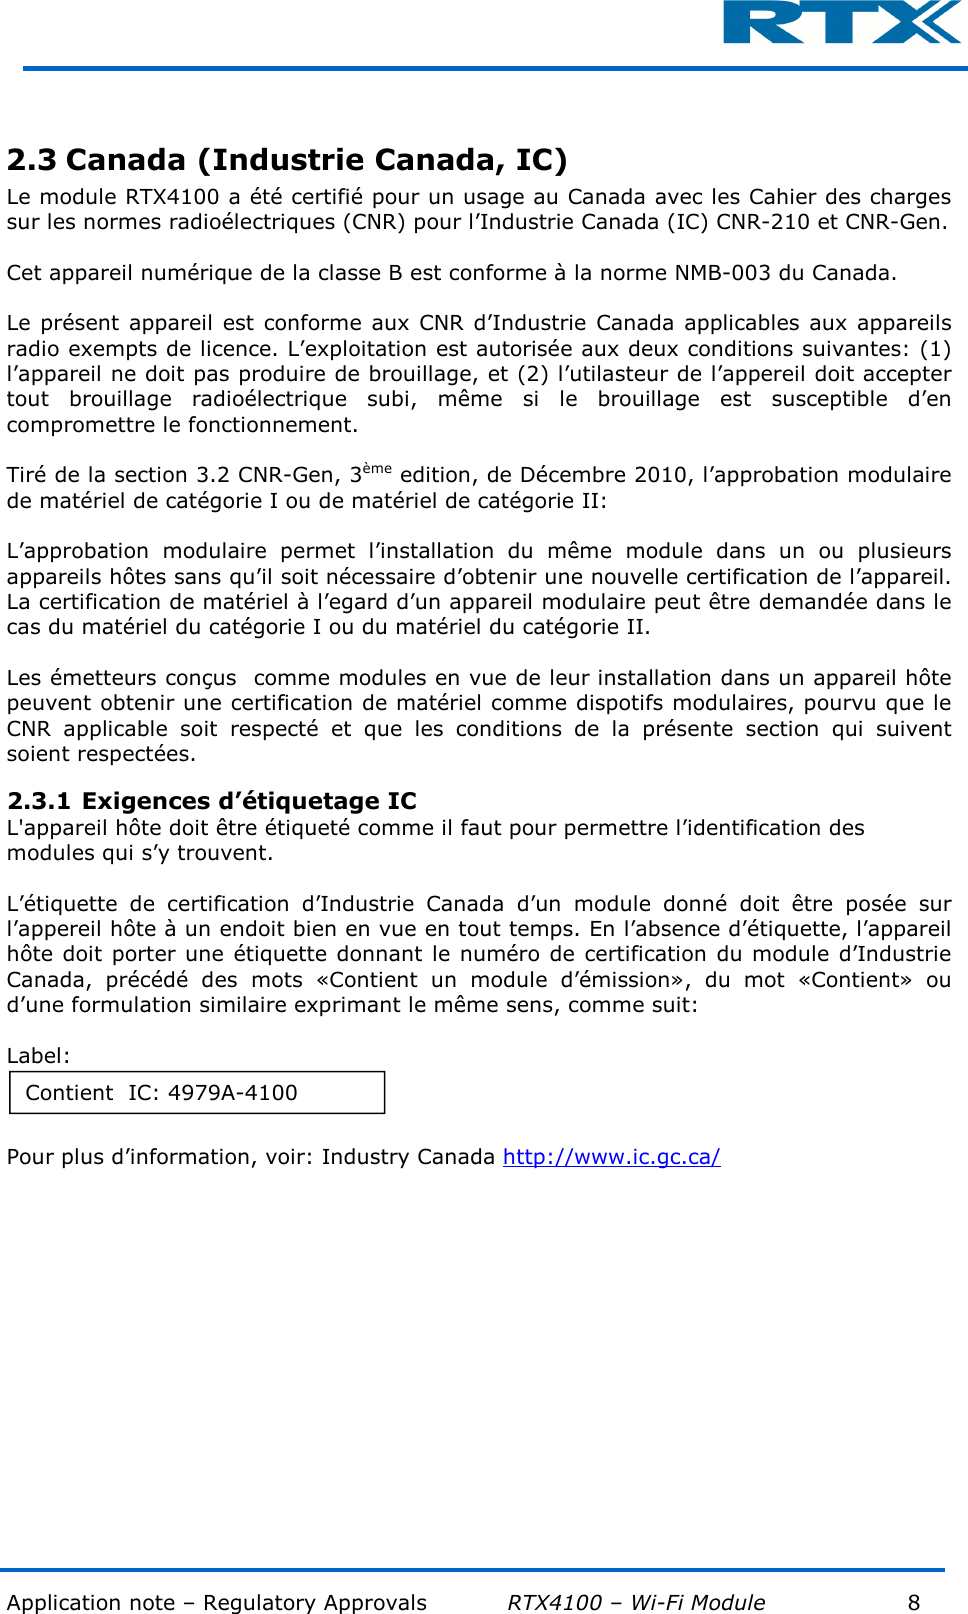  Application note – Regulatory Approvals           RTX4100 – Wi-Fi Module            8          2.3 Canada (Industrie Canada, IC) Le module RTX4100 a été certifié pour un usage au Canada avec les Cahier des charges sur les normes radioélectriques (CNR) pour l’Industrie Canada (IC) CNR-210 et CNR-Gen.   Cet appareil numérique de la classe B est conforme à la norme NMB-003 du Canada.  Le présent appareil  est conforme aux  CNR  d’Industrie Canada applicables aux  appareils radio exempts de licence. L’exploitation est autorisée aux deux conditions suivantes: (1) l’appareil ne doit pas produire de brouillage, et (2) l’utilasteur de l’appereil doit accepter tout  brouillage  radioélectrique  subi,  même  si  le  brouillage  est  susceptible  d’en compromettre le fonctionnement.  Tiré de la section 3.2 CNR-Gen, 3ème edition, de Décembre 2010, l’approbation modulaire de matériel de catégorie I ou de matériel de catégorie II:  L’approbation  modulaire  permet  l’installation  du  même  module  dans  un  ou  plusieurs appareils hôtes sans qu’il soit nécessaire d’obtenir une nouvelle certification de l’appareil. La certification de matériel à l’egard d’un appareil modulaire peut être demandée dans le cas du matériel du catégorie I ou du matériel du catégorie II.  Les émetteurs conçus  comme modules en vue de leur installation dans un appareil hôte peuvent obtenir une certification de matériel comme dispotifs modulaires, pourvu que le CNR  applicable  soit  respecté  et  que  les  conditions  de  la  présente  section  qui  suivent soient respectées. 2.3.1 Exigences d’étiquetage IC L&apos;appareil hôte doit être étiqueté comme il faut pour permettre l’identification des modules qui s’y trouvent.  L’étiquette  de  certification  d’Industrie  Canada  d’un  module  donné  doit  être  posée  sur l’appereil hôte à un endoit bien en vue en tout temps. En l’absence d’étiquette, l’appareil hôte doit  porter une  étiquette donnant le numéro de certification du module d’Industrie Canada,  précédé  des  mots  «Contient  un  module  d’émission»,  du  mot  «Contient»  ou d’une formulation similaire exprimant le même sens, comme suit:  Label:  Pour plus d’information, voir: Industry Canada http://www.ic.gc.ca/   Contient  IC: 4979A-4100 